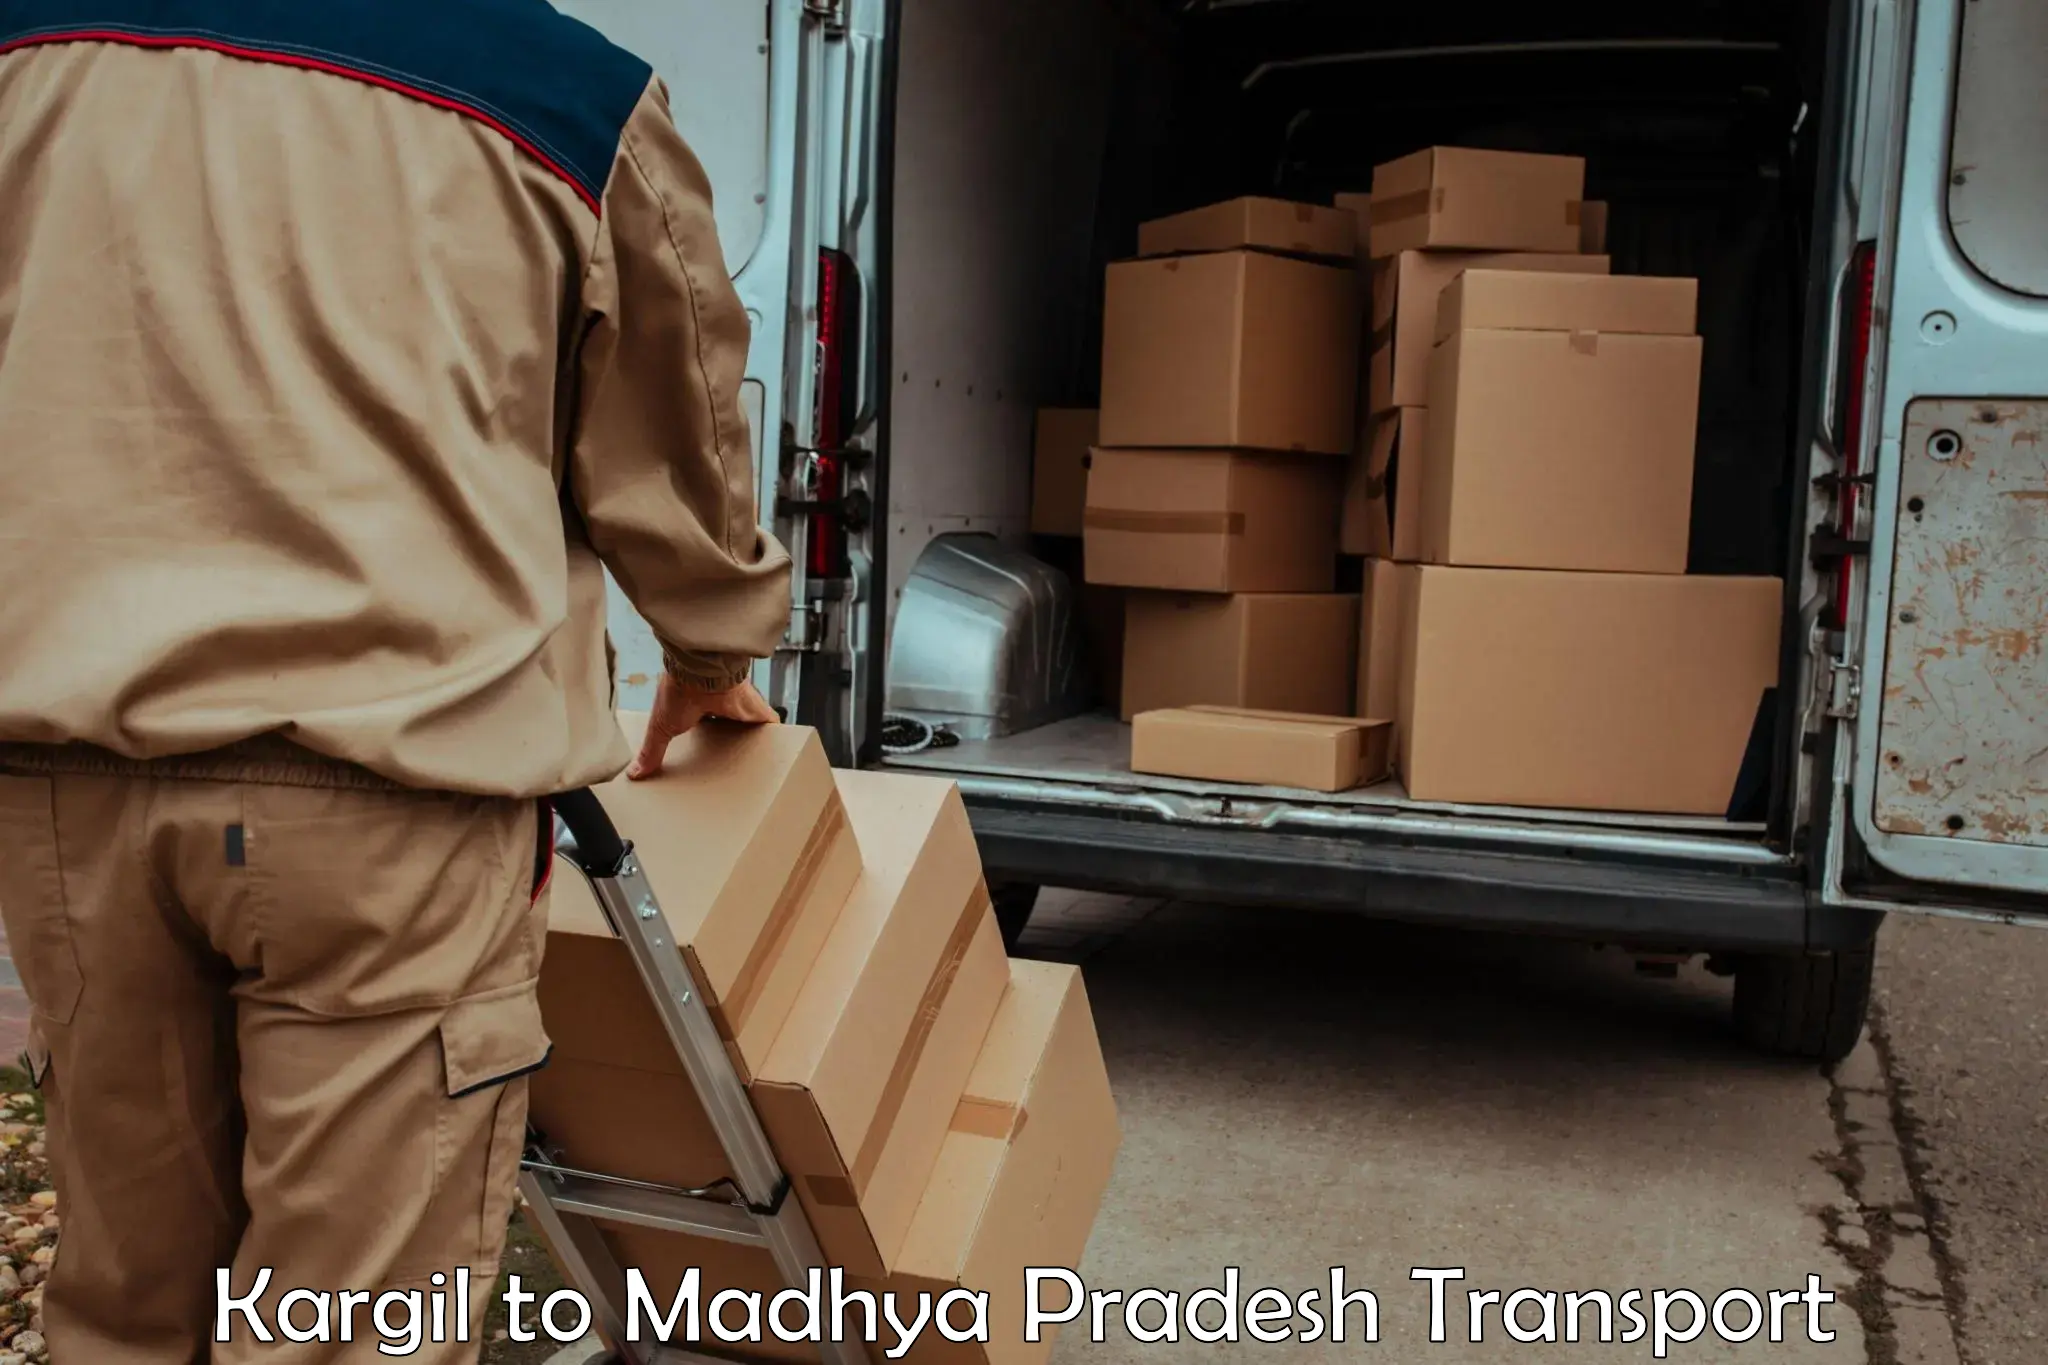 Shipping partner Kargil to Bhind